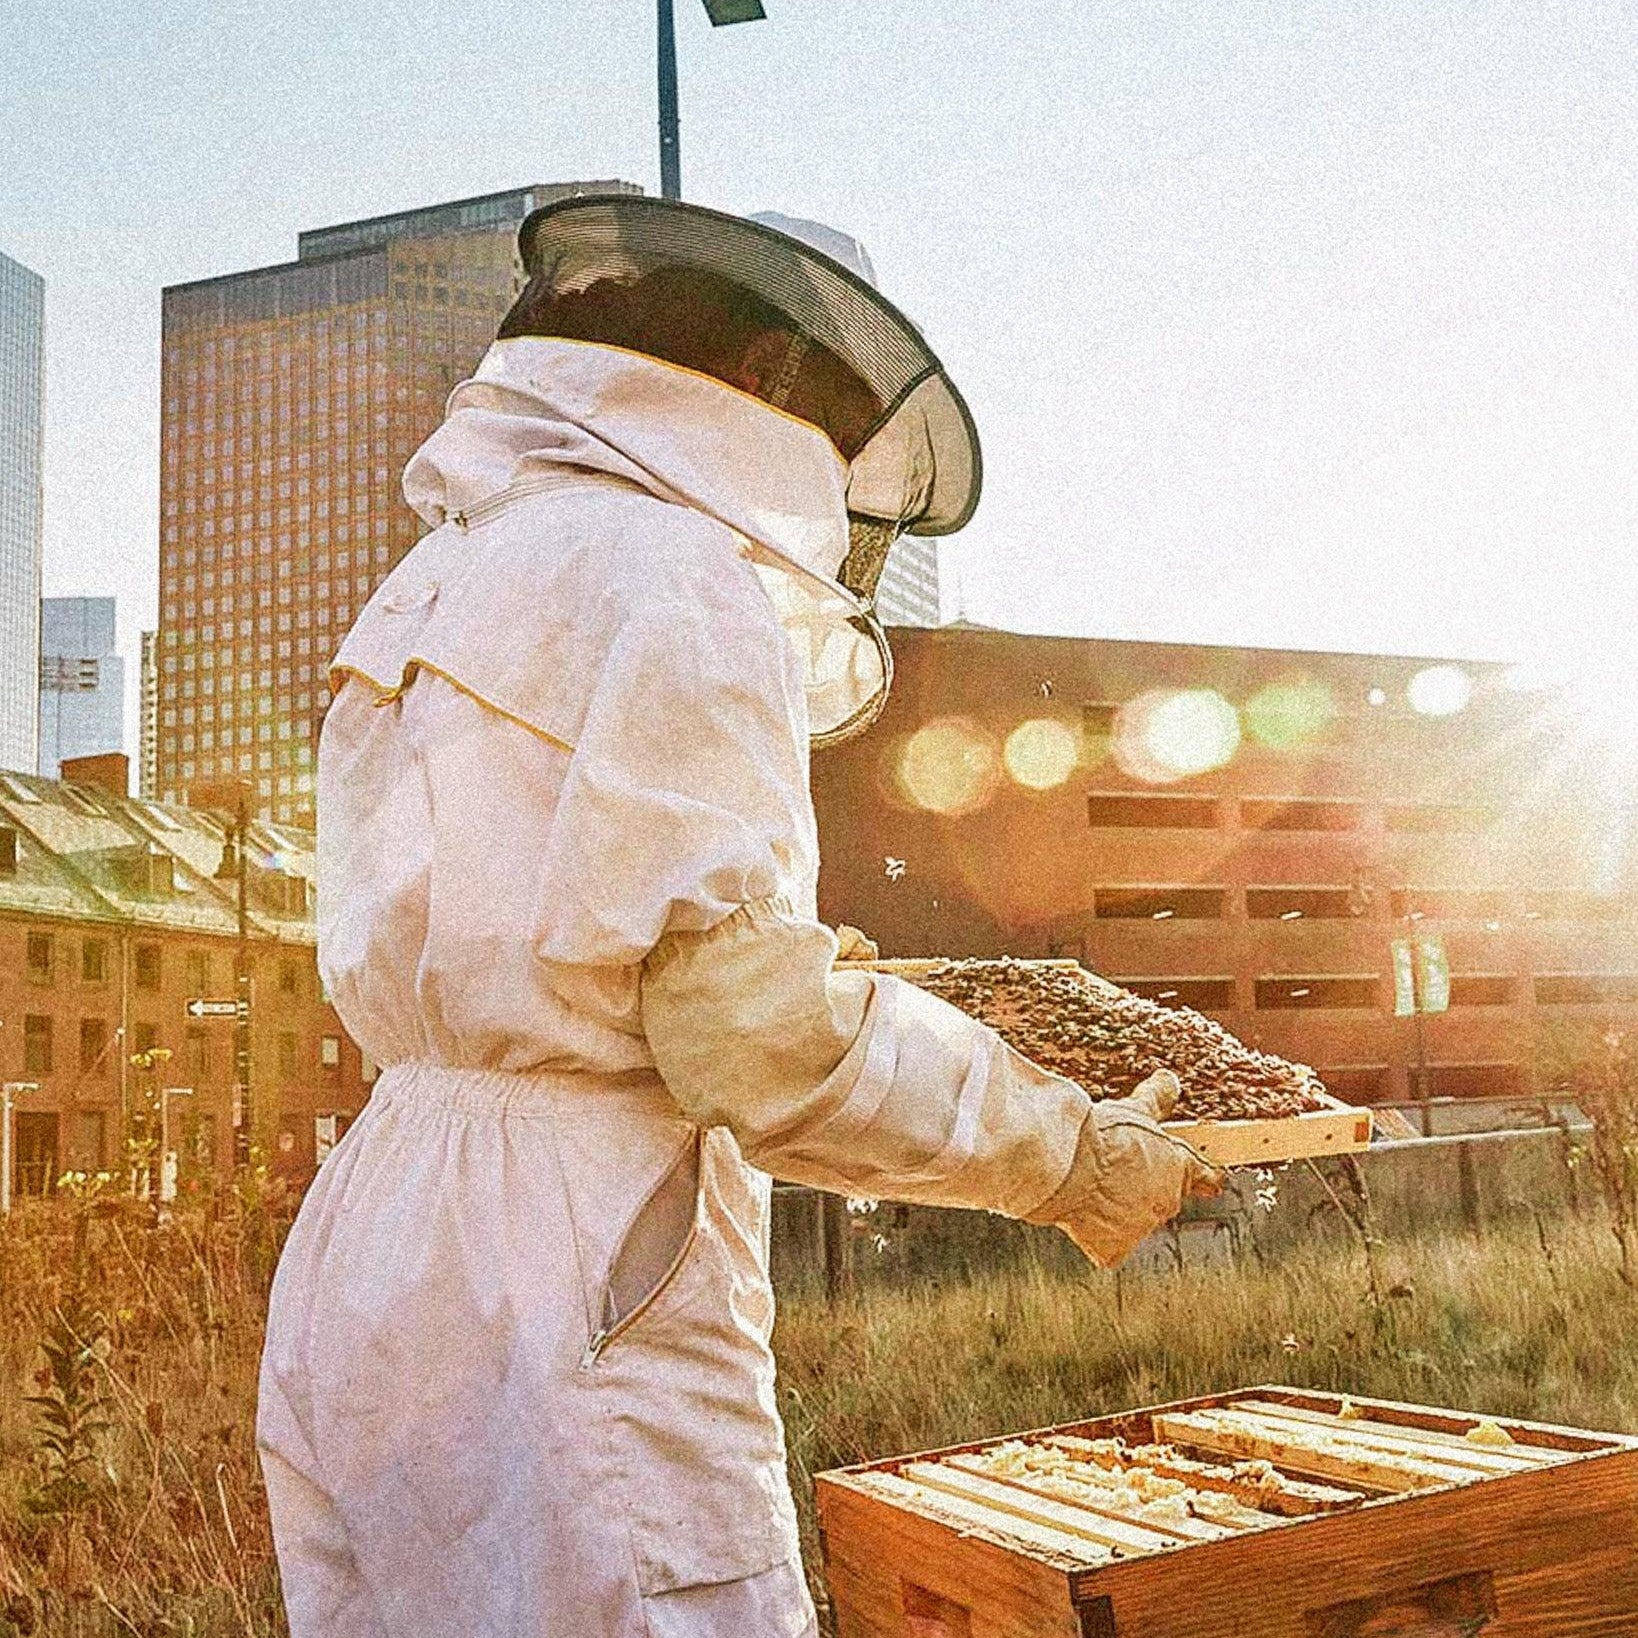 Včely ve městech: Včelaření a podpora včel v urbanizovaných oblastech - Davidova ekologická včelí farma